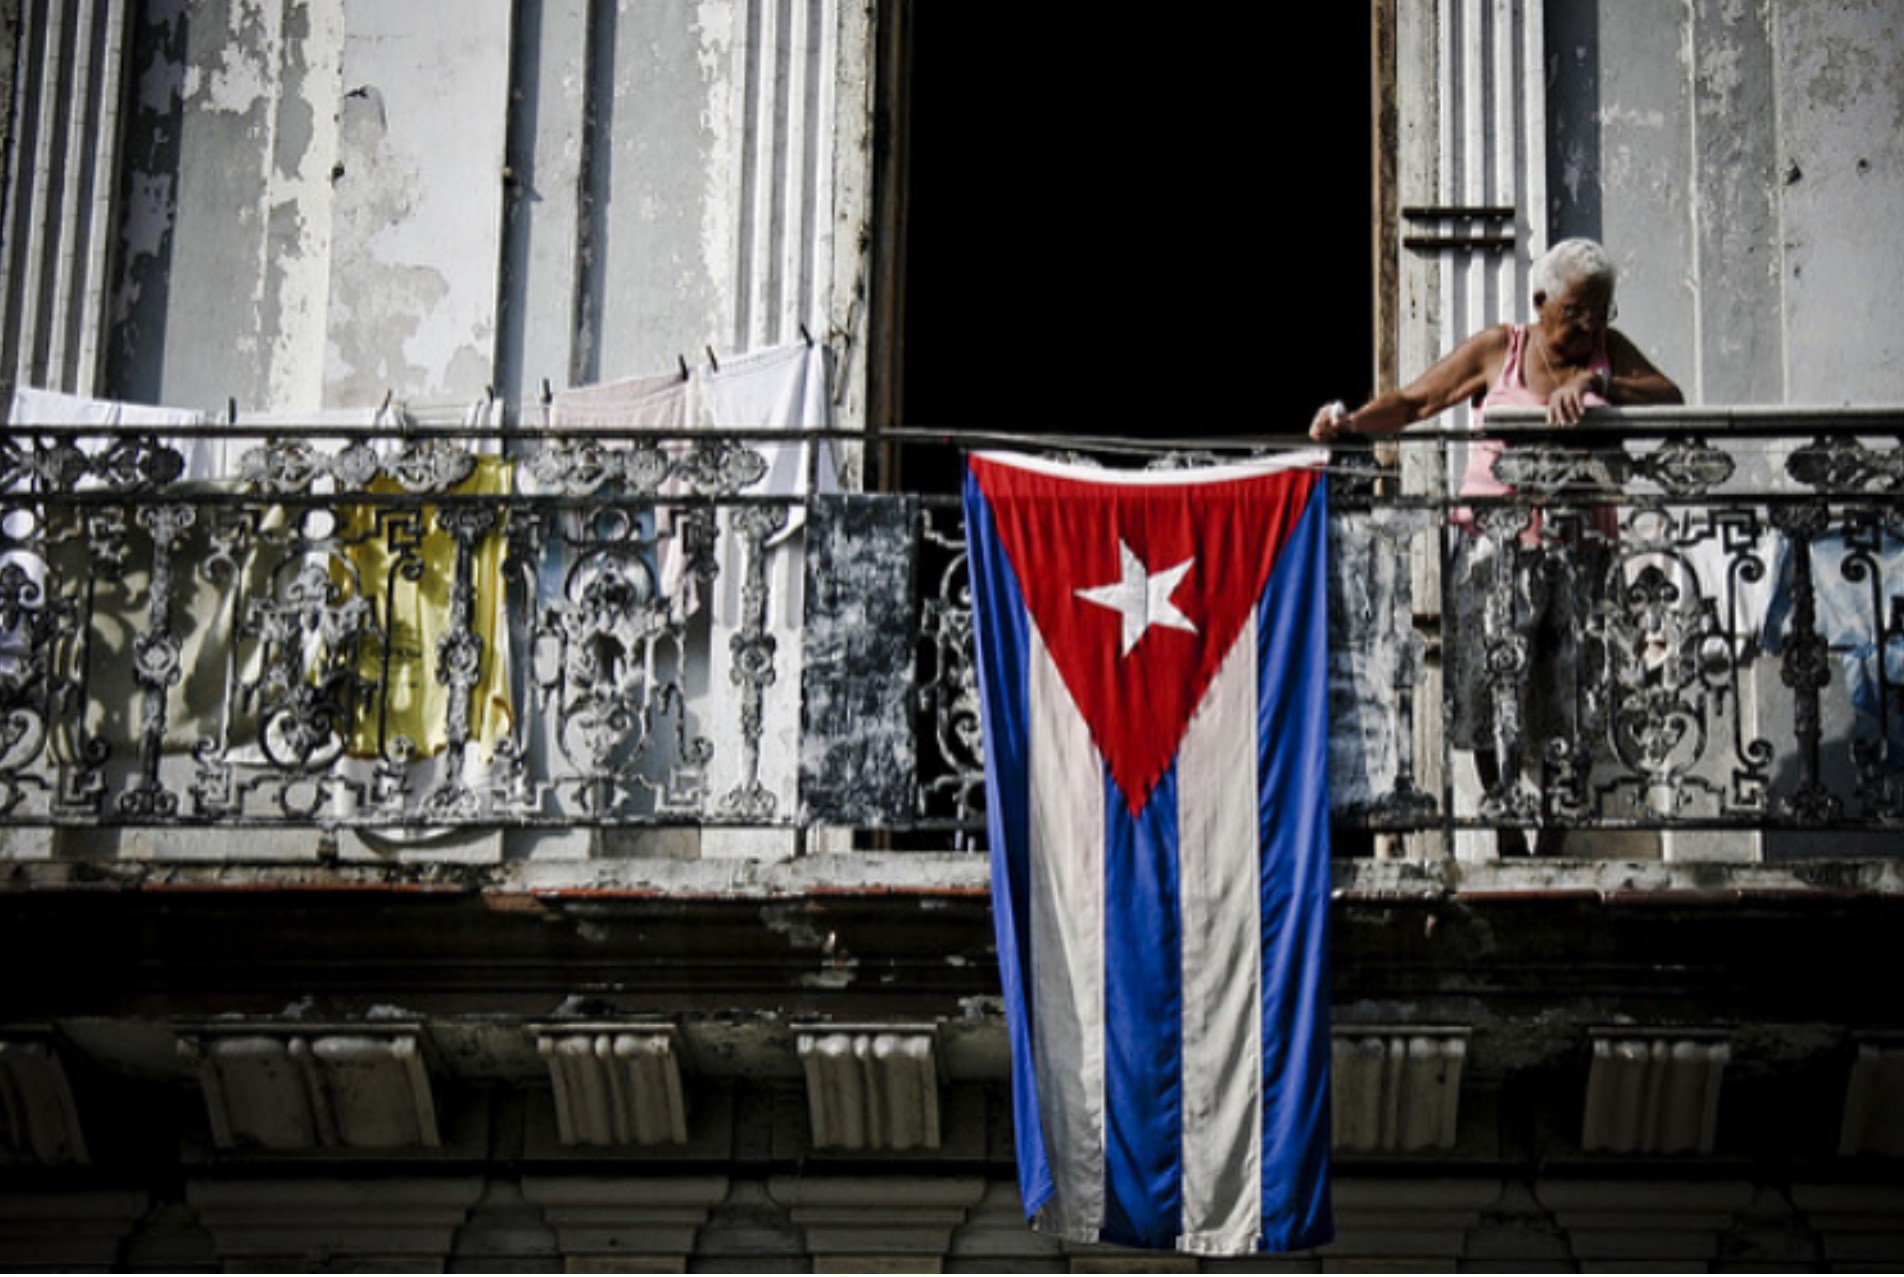 Democratizar Cuba exigirá cambio, renuncia, diálogo y riqueza